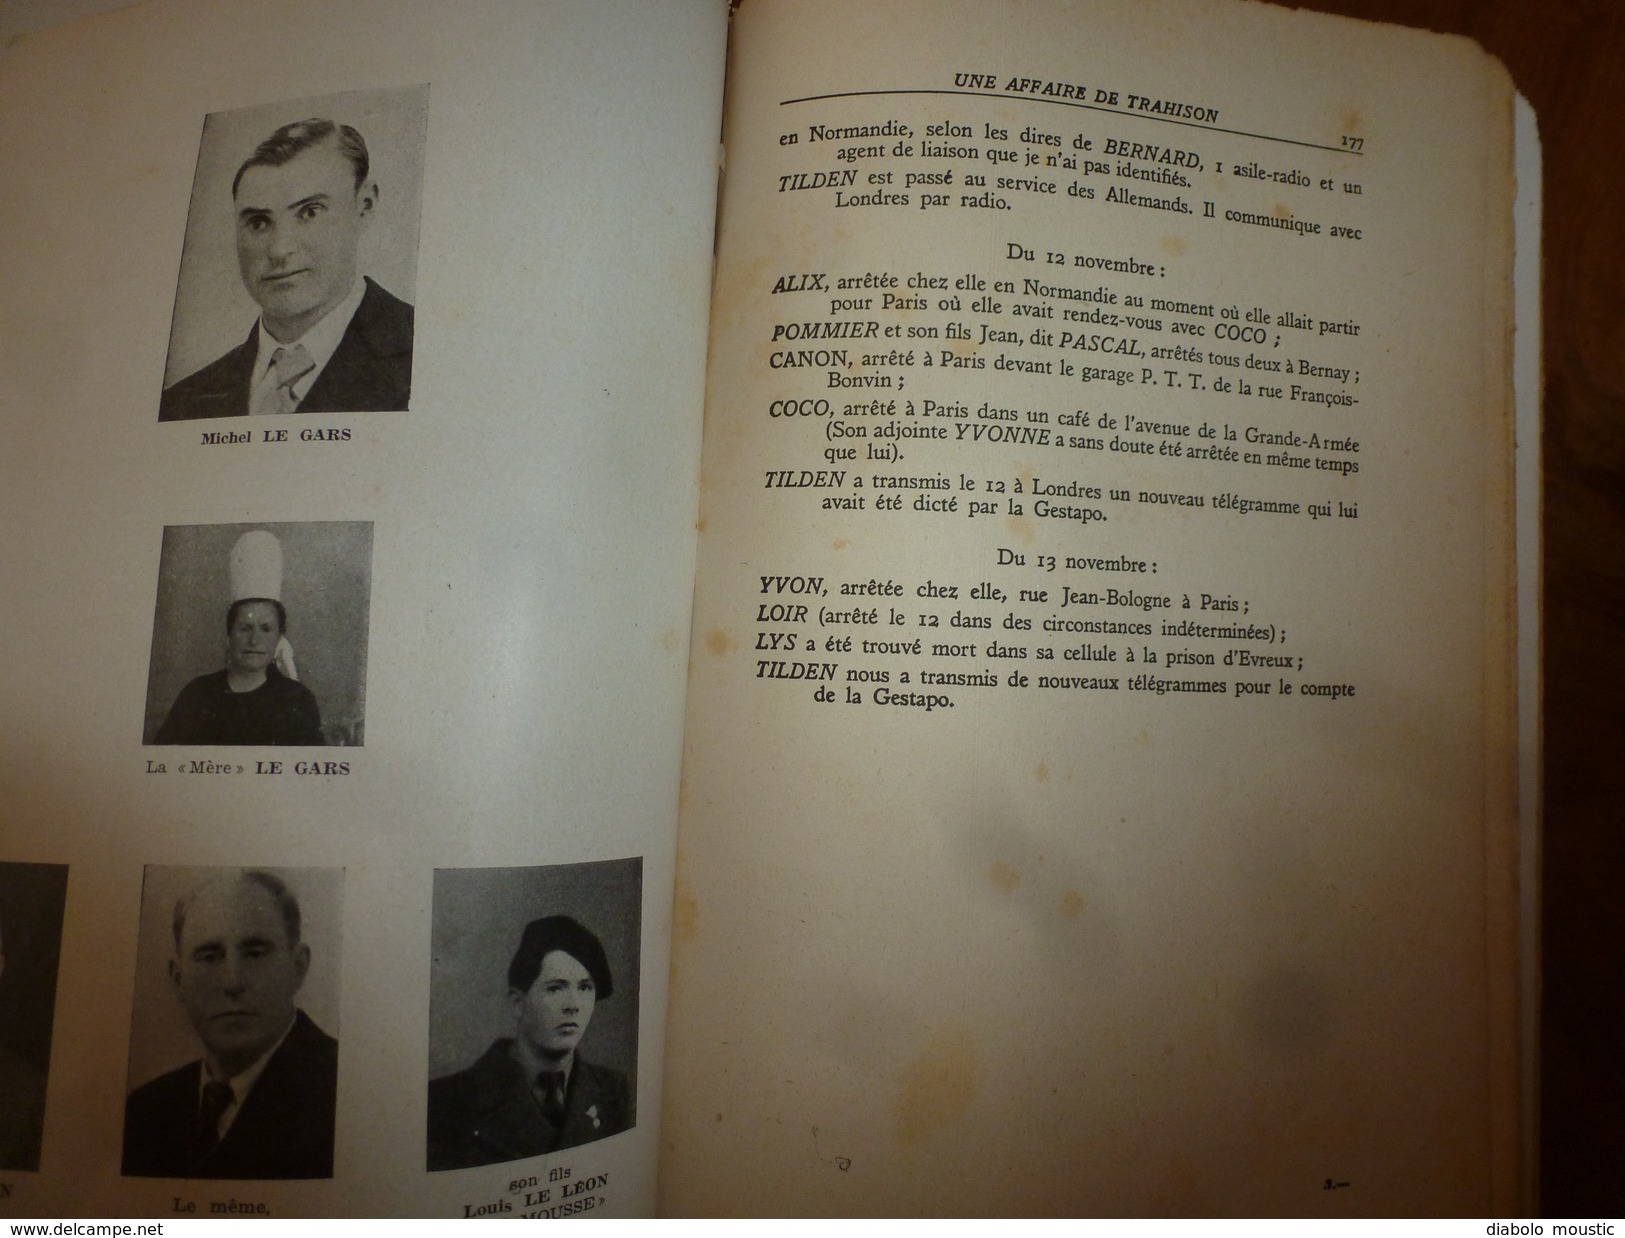 1947 UNE AFFAIRE DE TRAHISON par REMY dédicacé à Charles Breton CHEF RESISTANT,pour service rendu à l'OCM,photographies